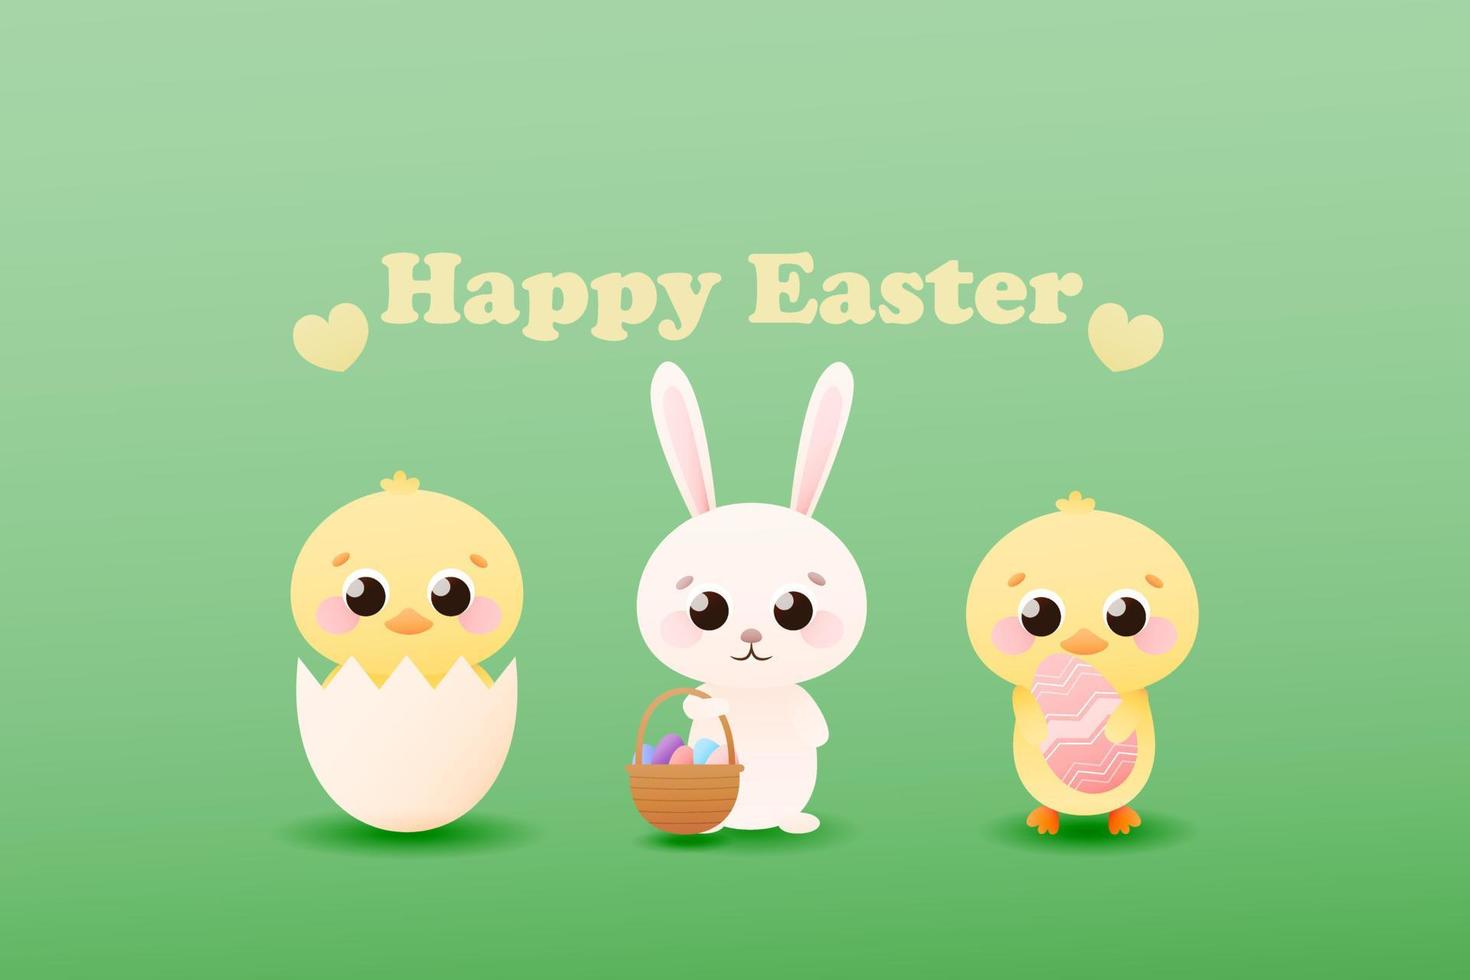 bannière web pour les vacances de pâques avec des personnages enfantins mignons, petit lapin avec panier avec oeufs de pâques, poussins en coquille en style cartoon sur fond vert vecteur